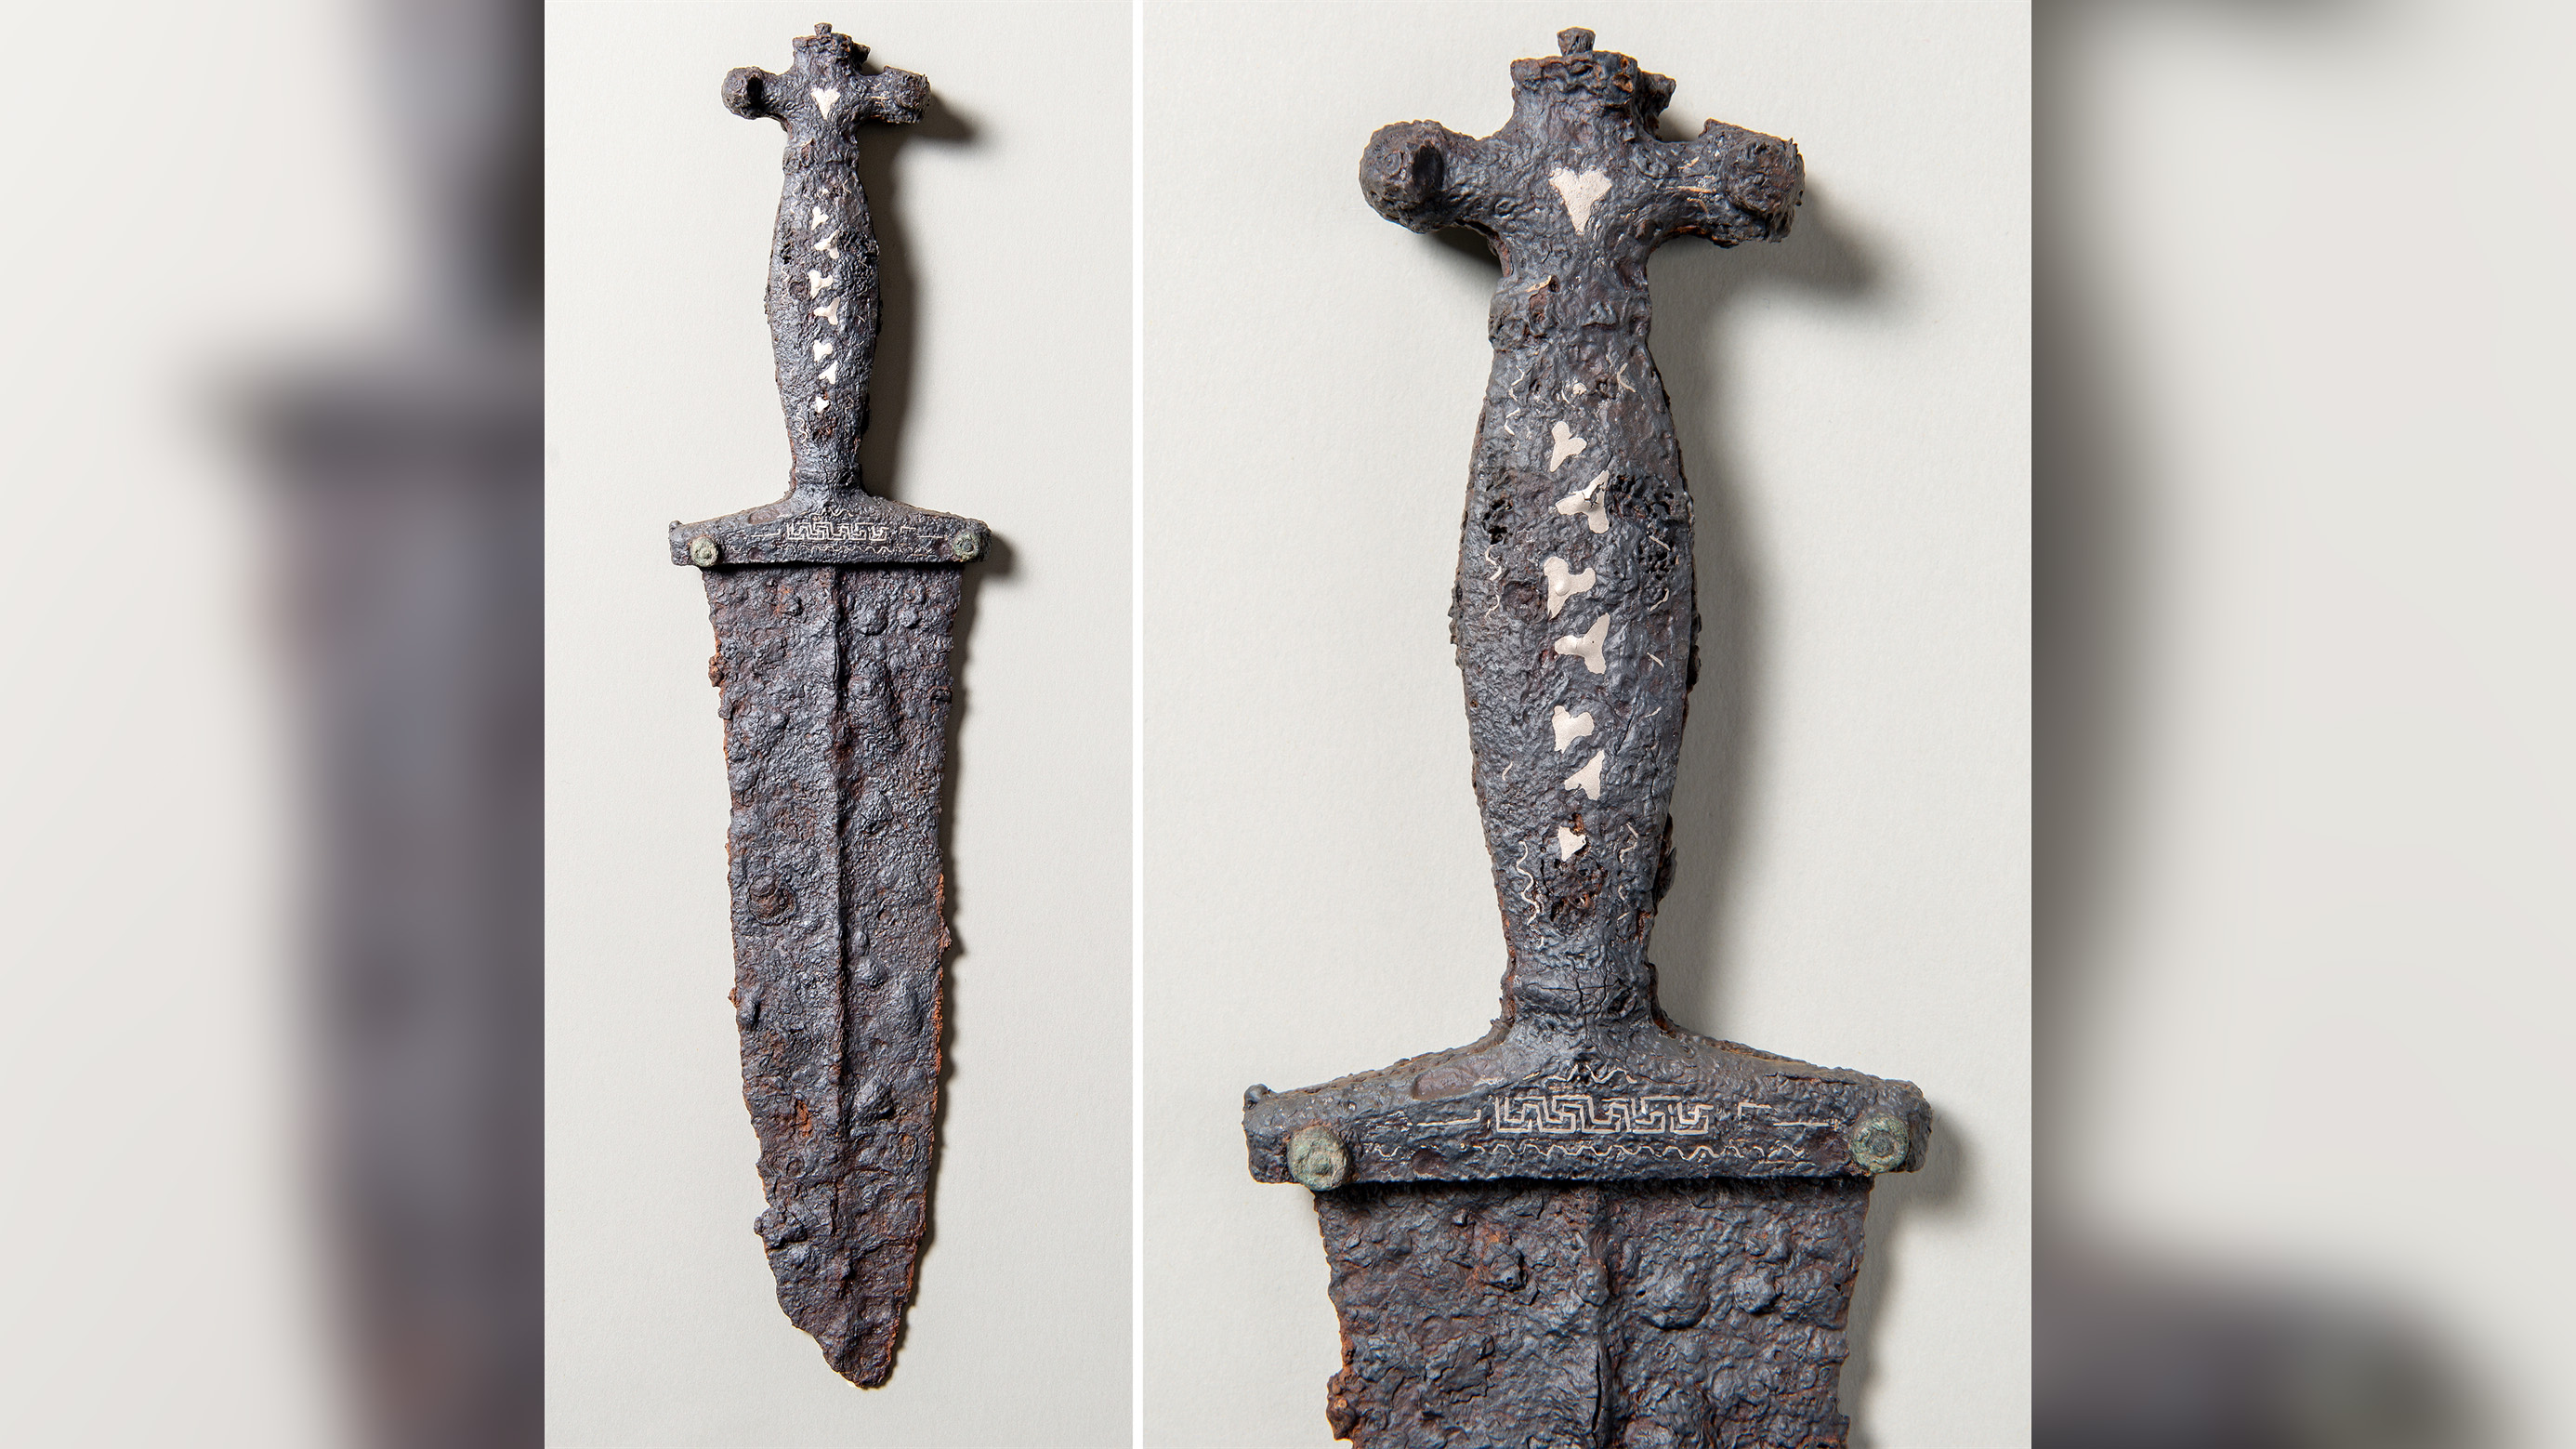 Der antike Eisendolch ist reich mit Einlagen aus Silber und Messing verziert.  Es gehörte einem römischen Legionär und wurde möglicherweise als Dankeschön nach einem Sieg in der Schlacht absichtlich begraben.